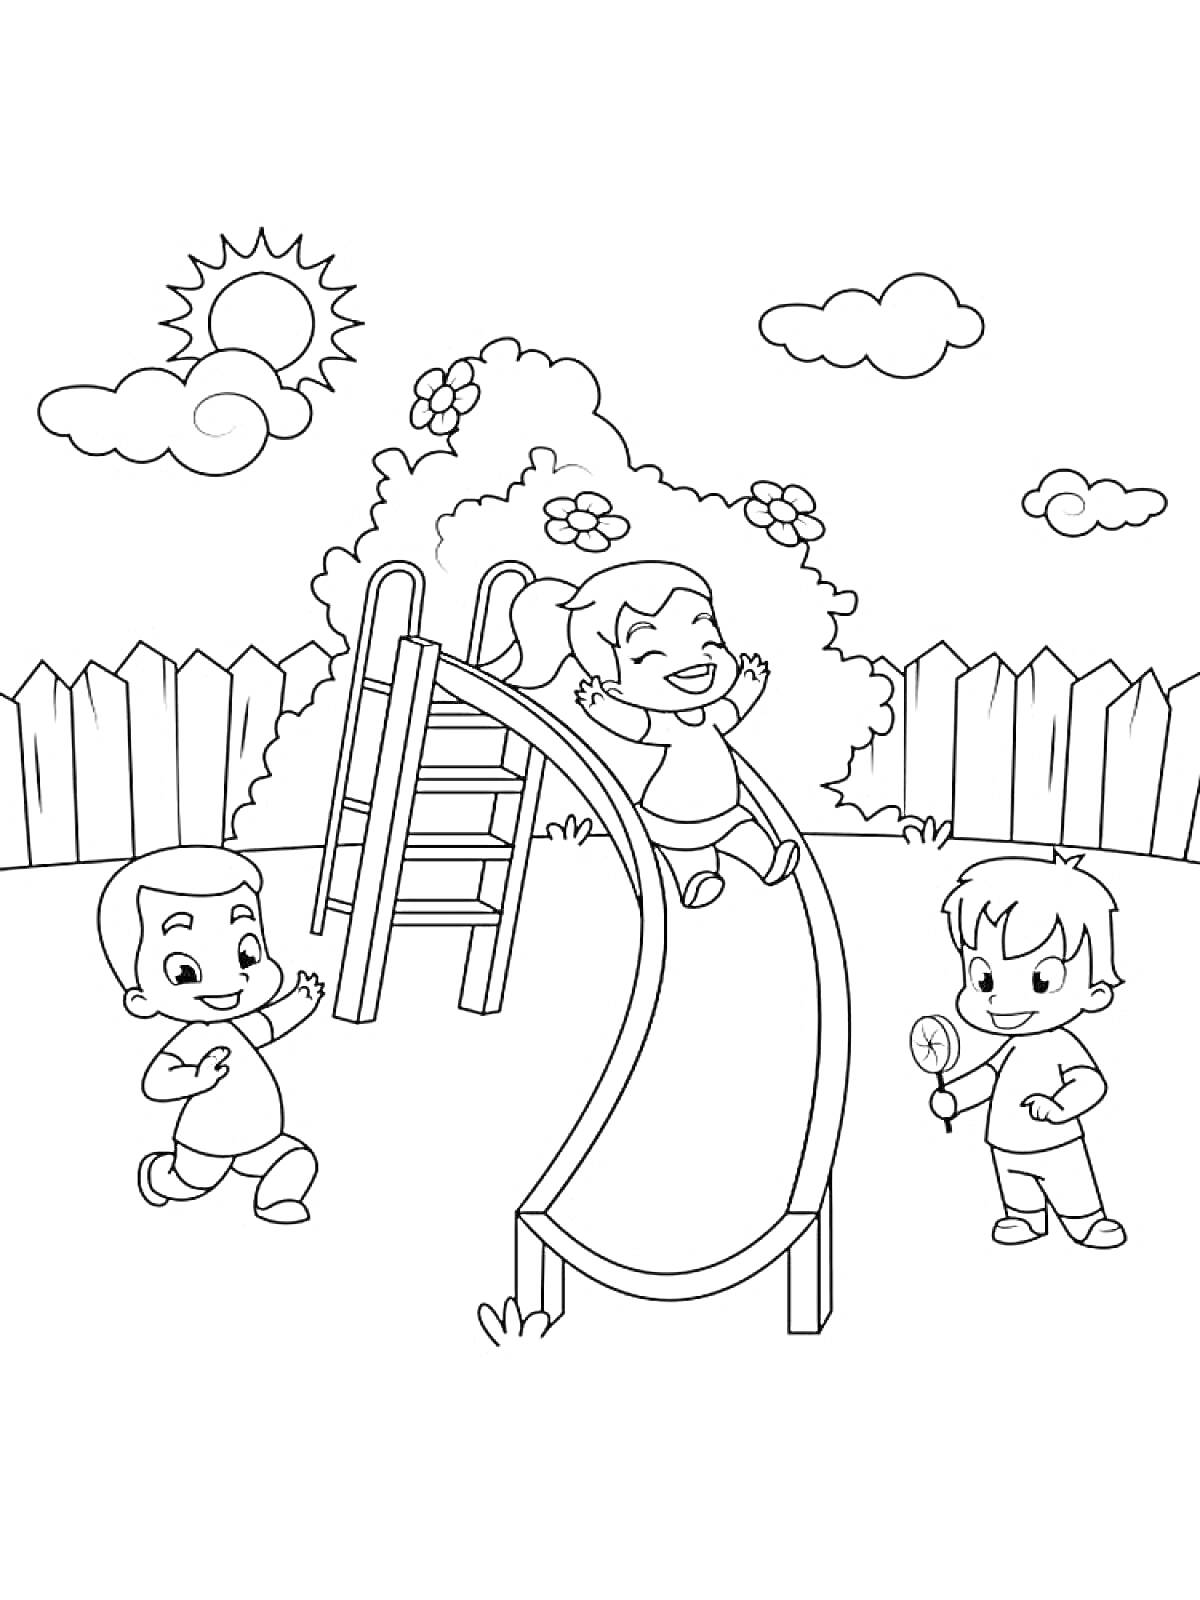 Раскраска Дети играют на горке в парке; мальчик на земле, девочка скатывается с горки, другой мальчик держит мячик, дерево с цветами, забор, солнце и облака